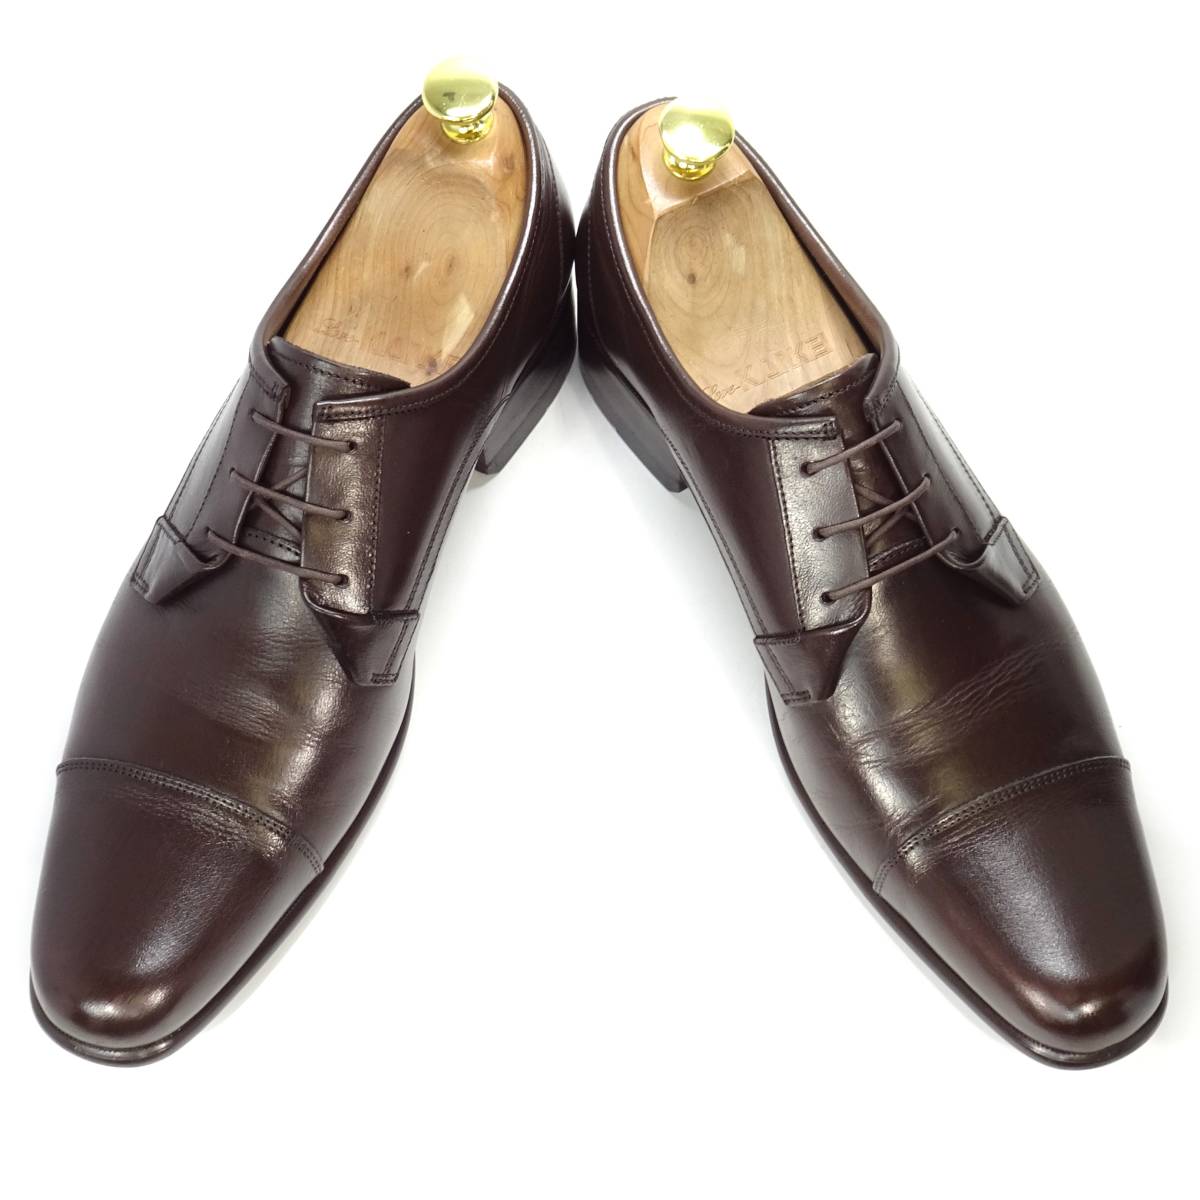 即決 KATHARINE HAMNETT LONDON 26.0cm ストレートチップ キャサリンハムネット メンズ 茶 ブラウン 本革 ビジネス 本皮 革靴 紳士靴 通勤